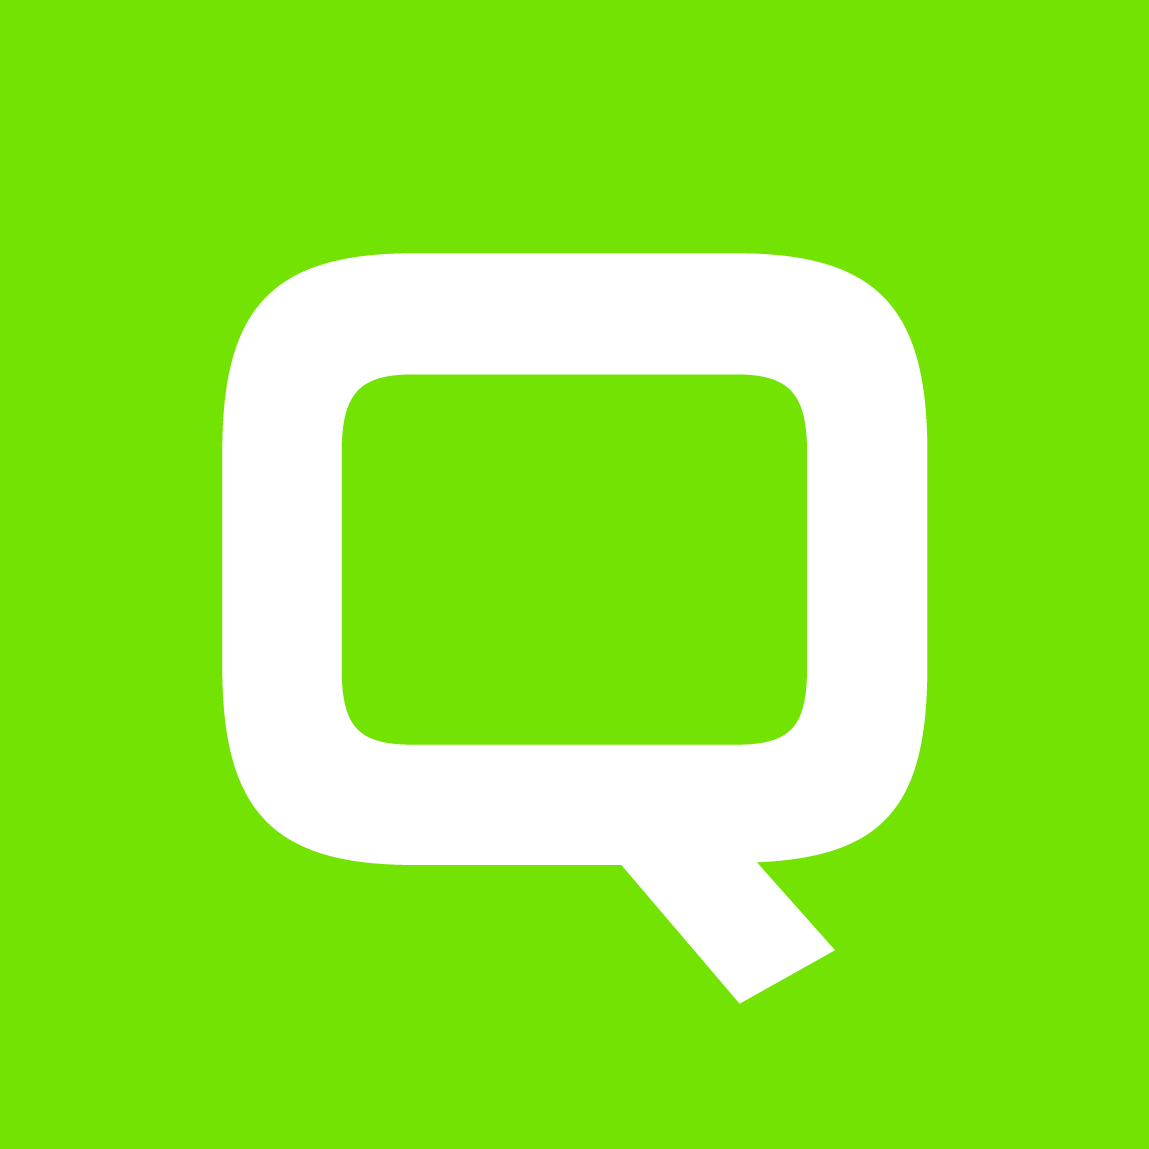 QUBI Dao | $QBIT Token